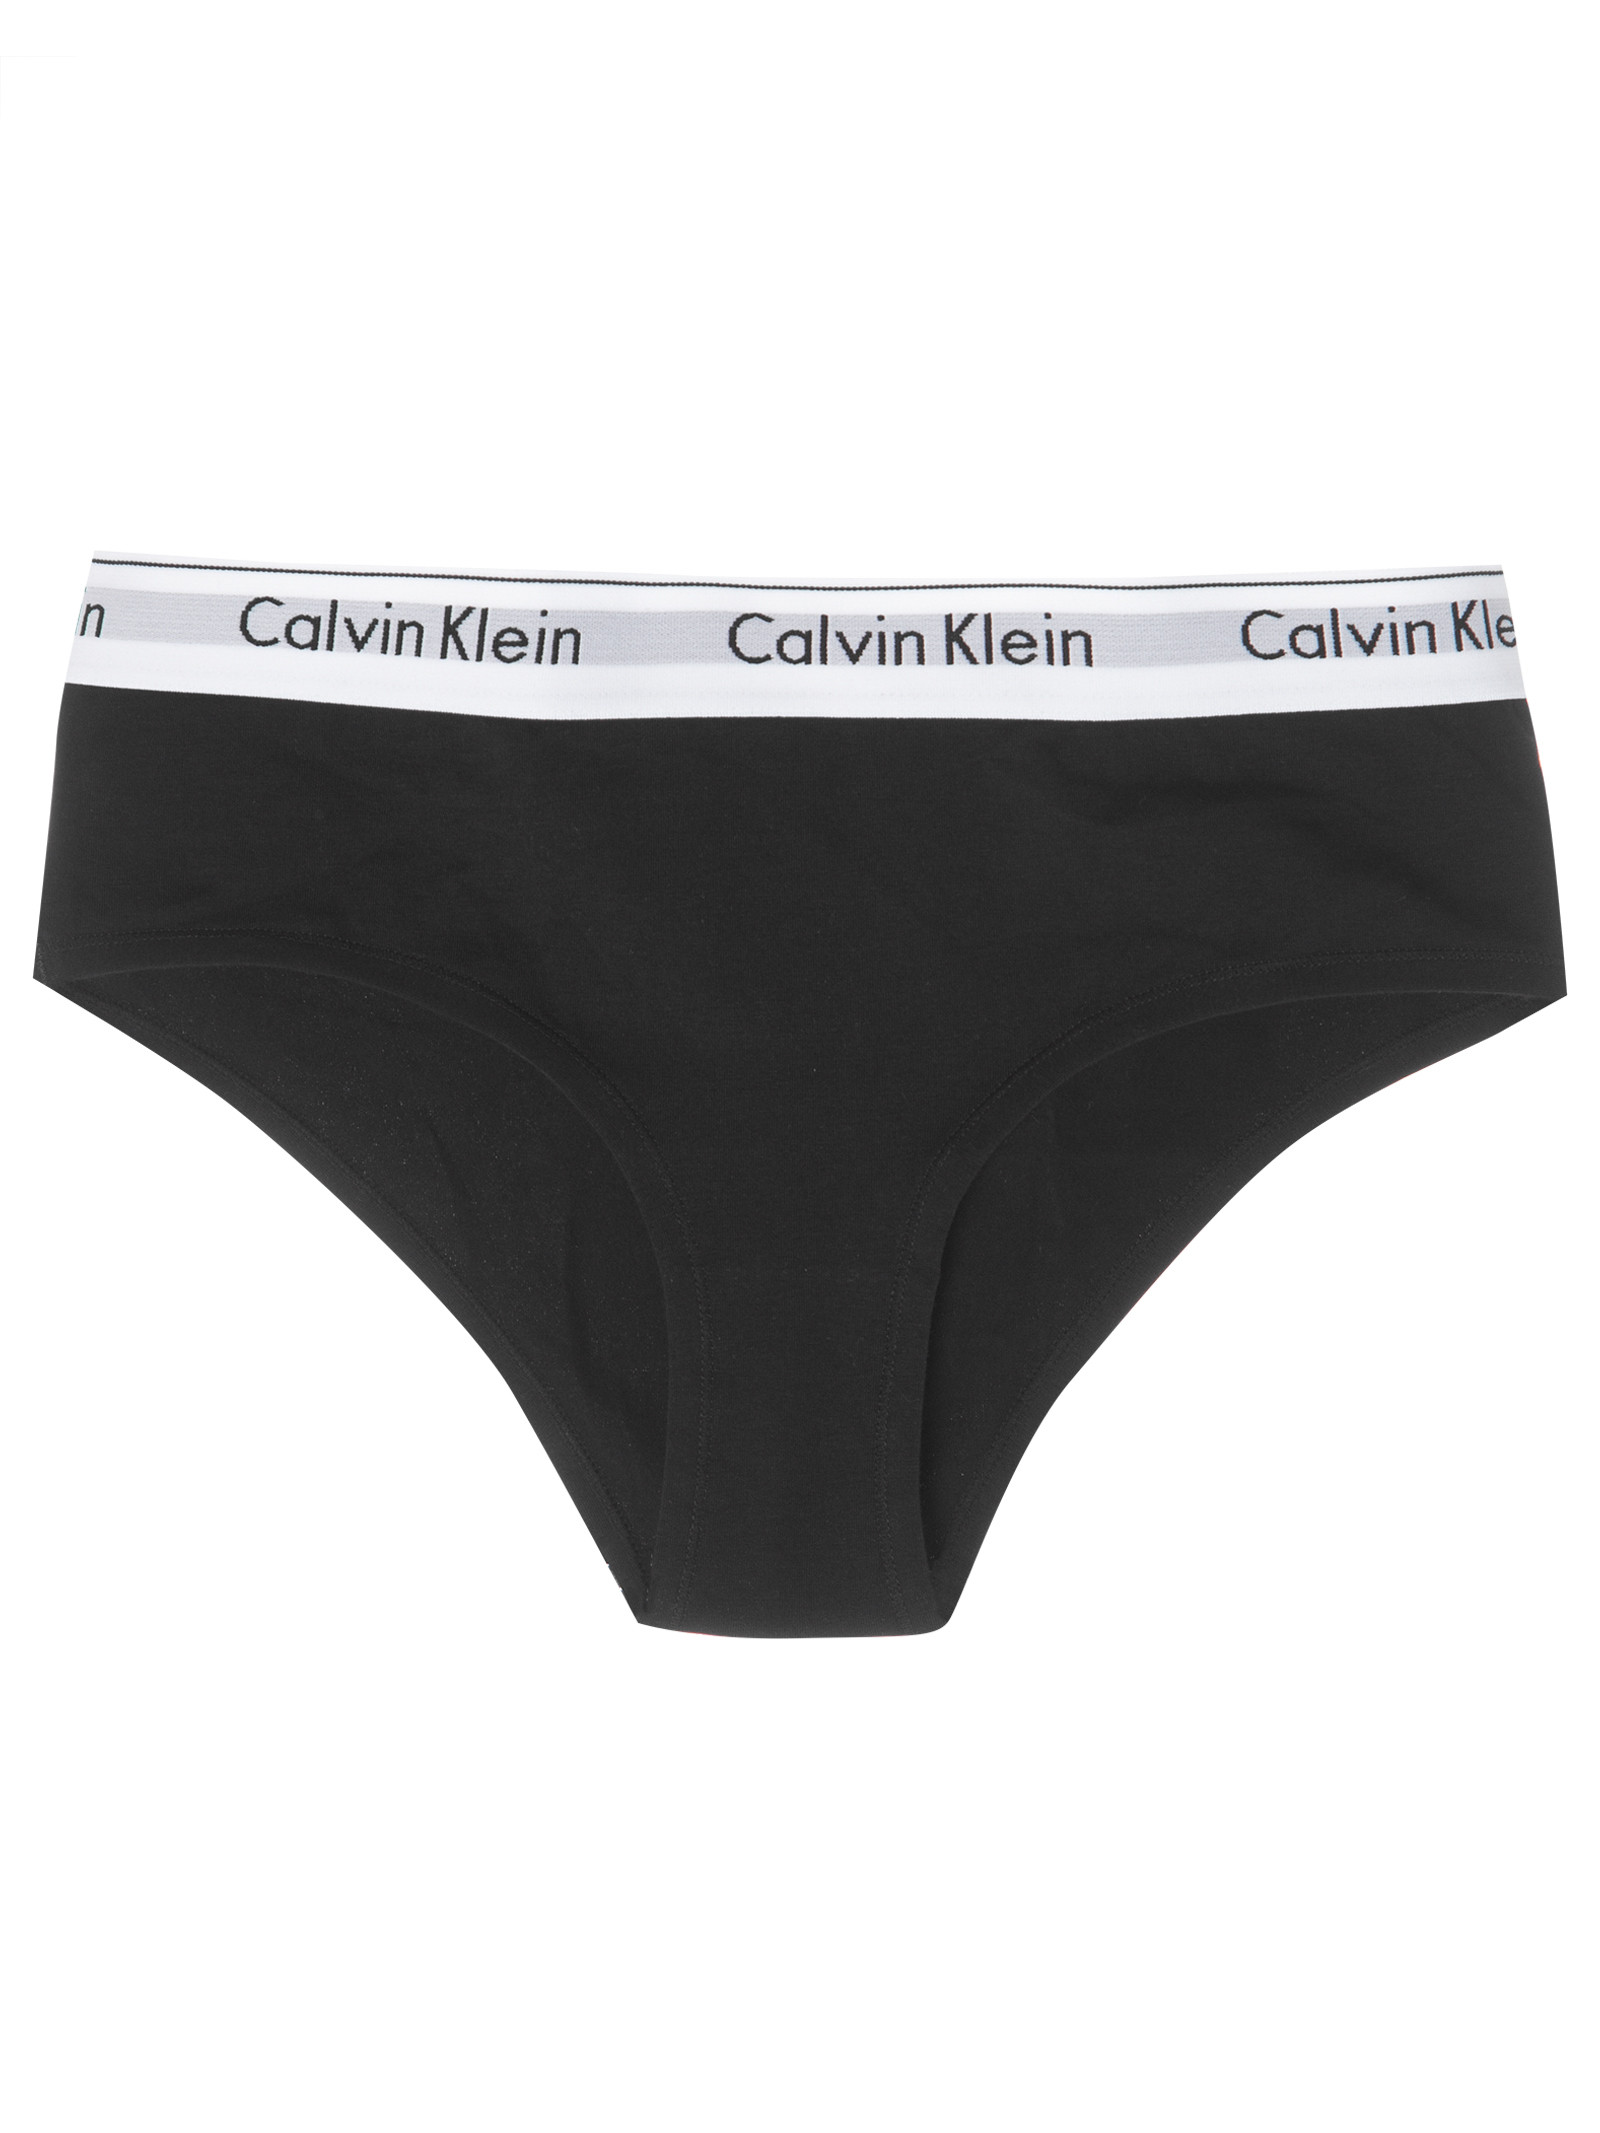 Buy Calvin Klein Tanga Modern Cotton In Black